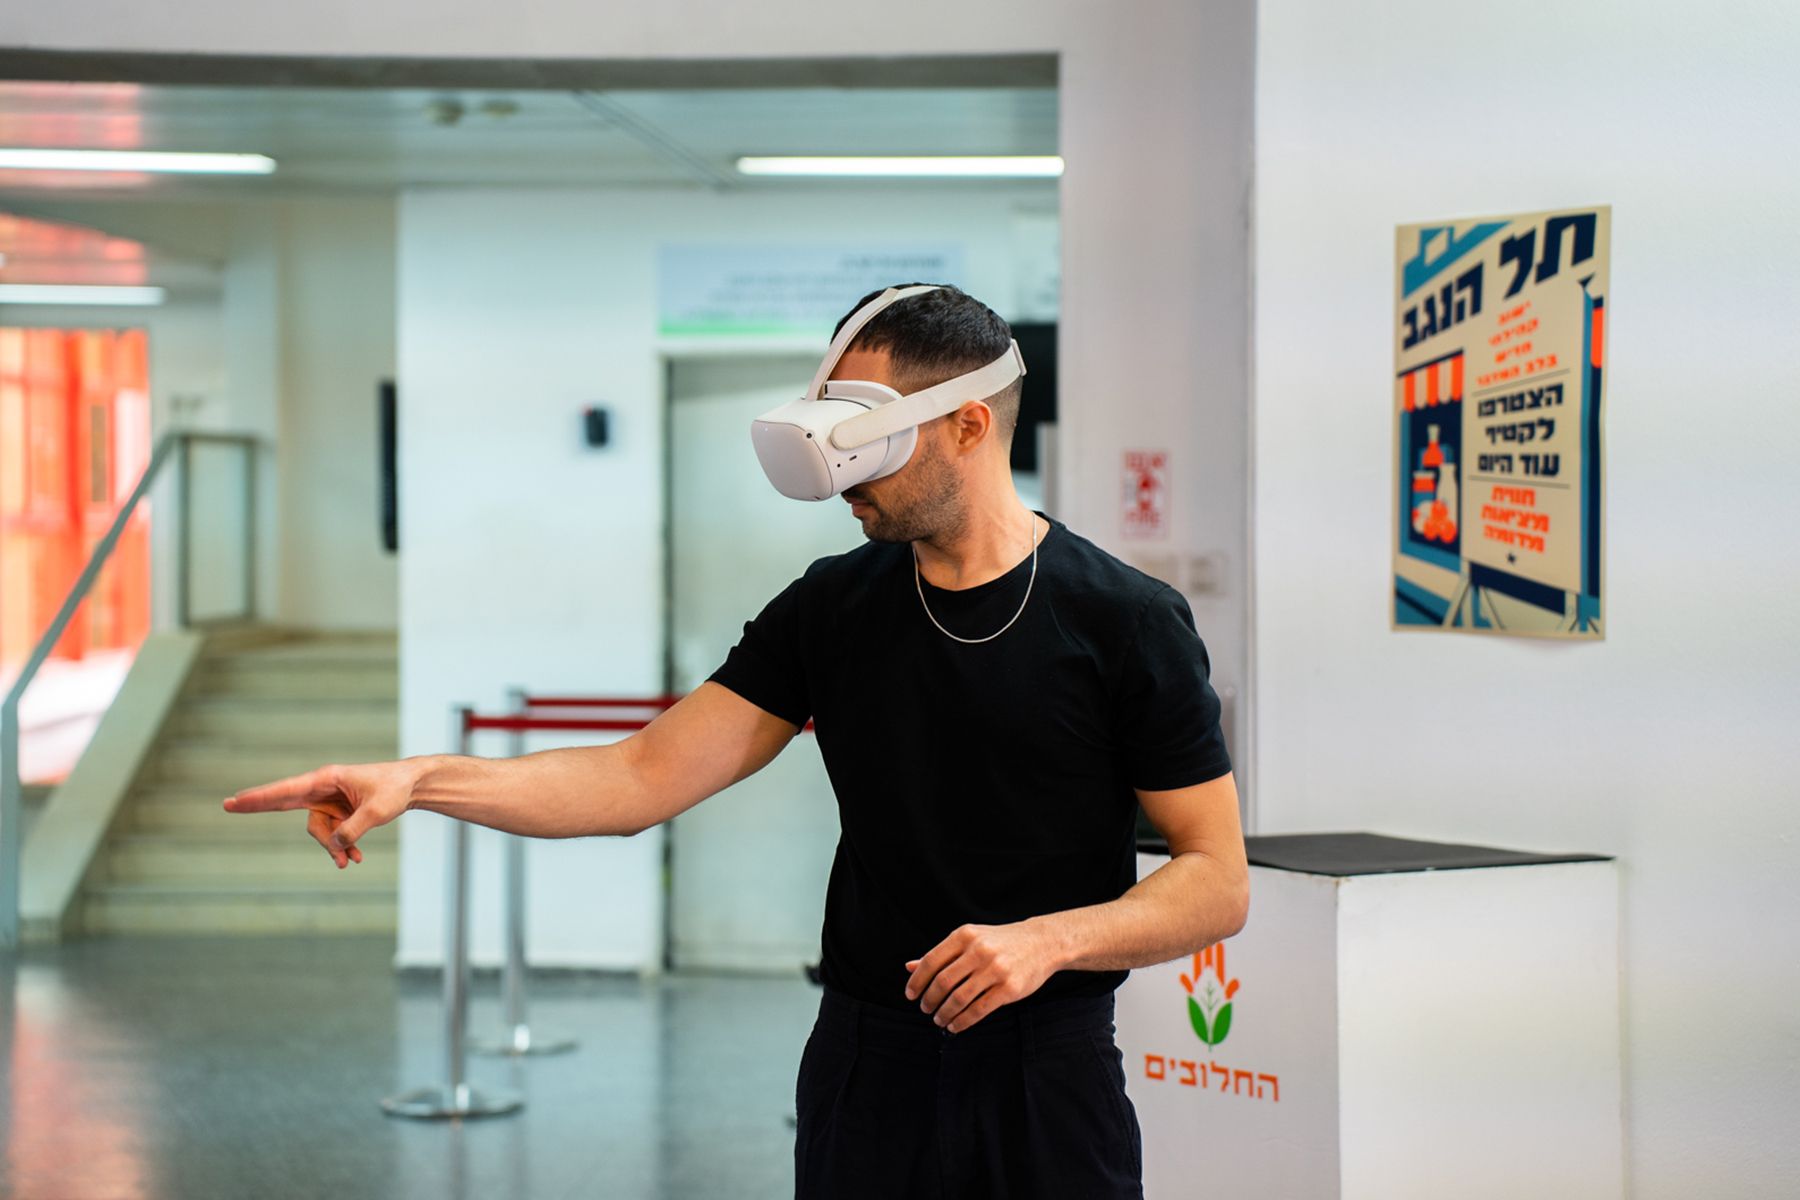 בן אדם במשקפת מציאות מדומה עושה תנועה עם האצבע